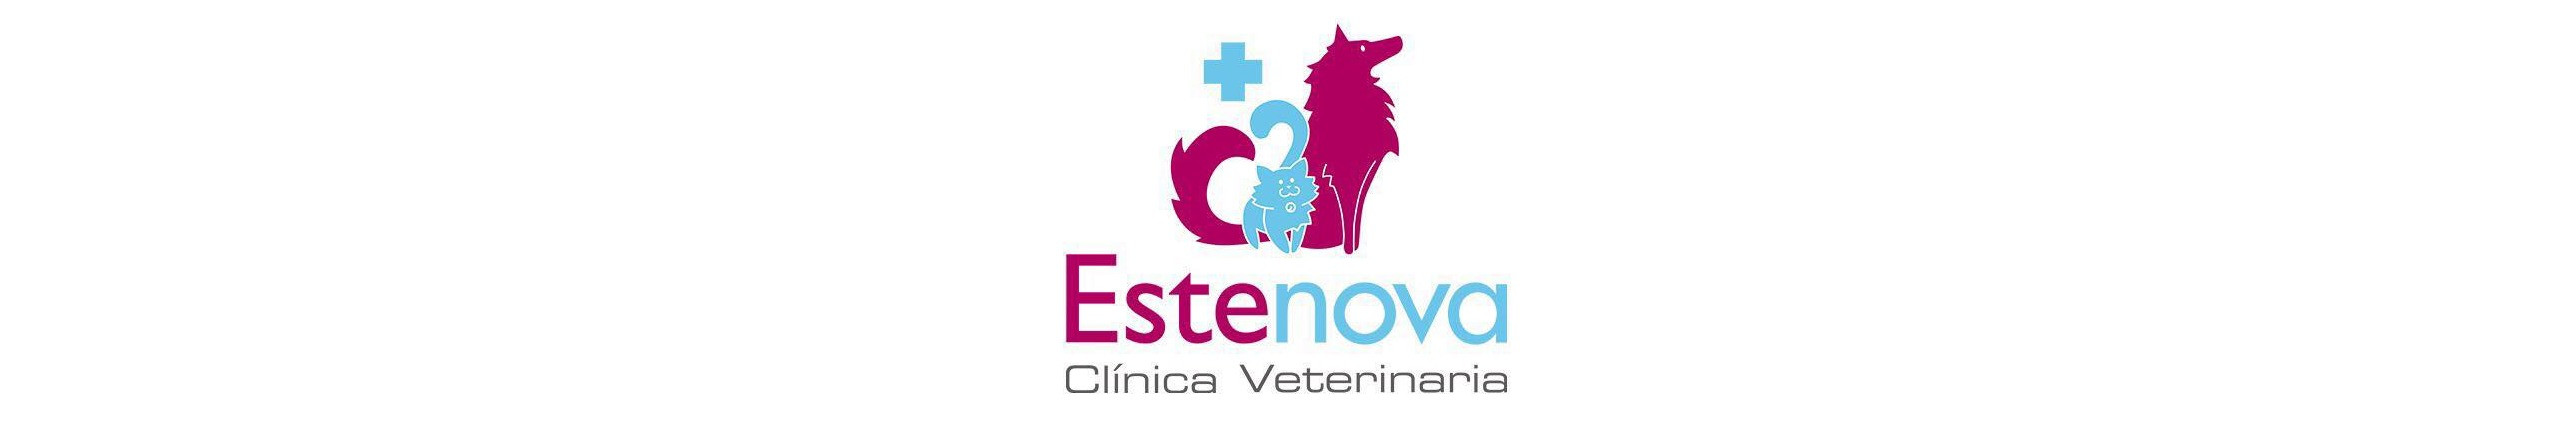 Estenova Clínica Veterinaria